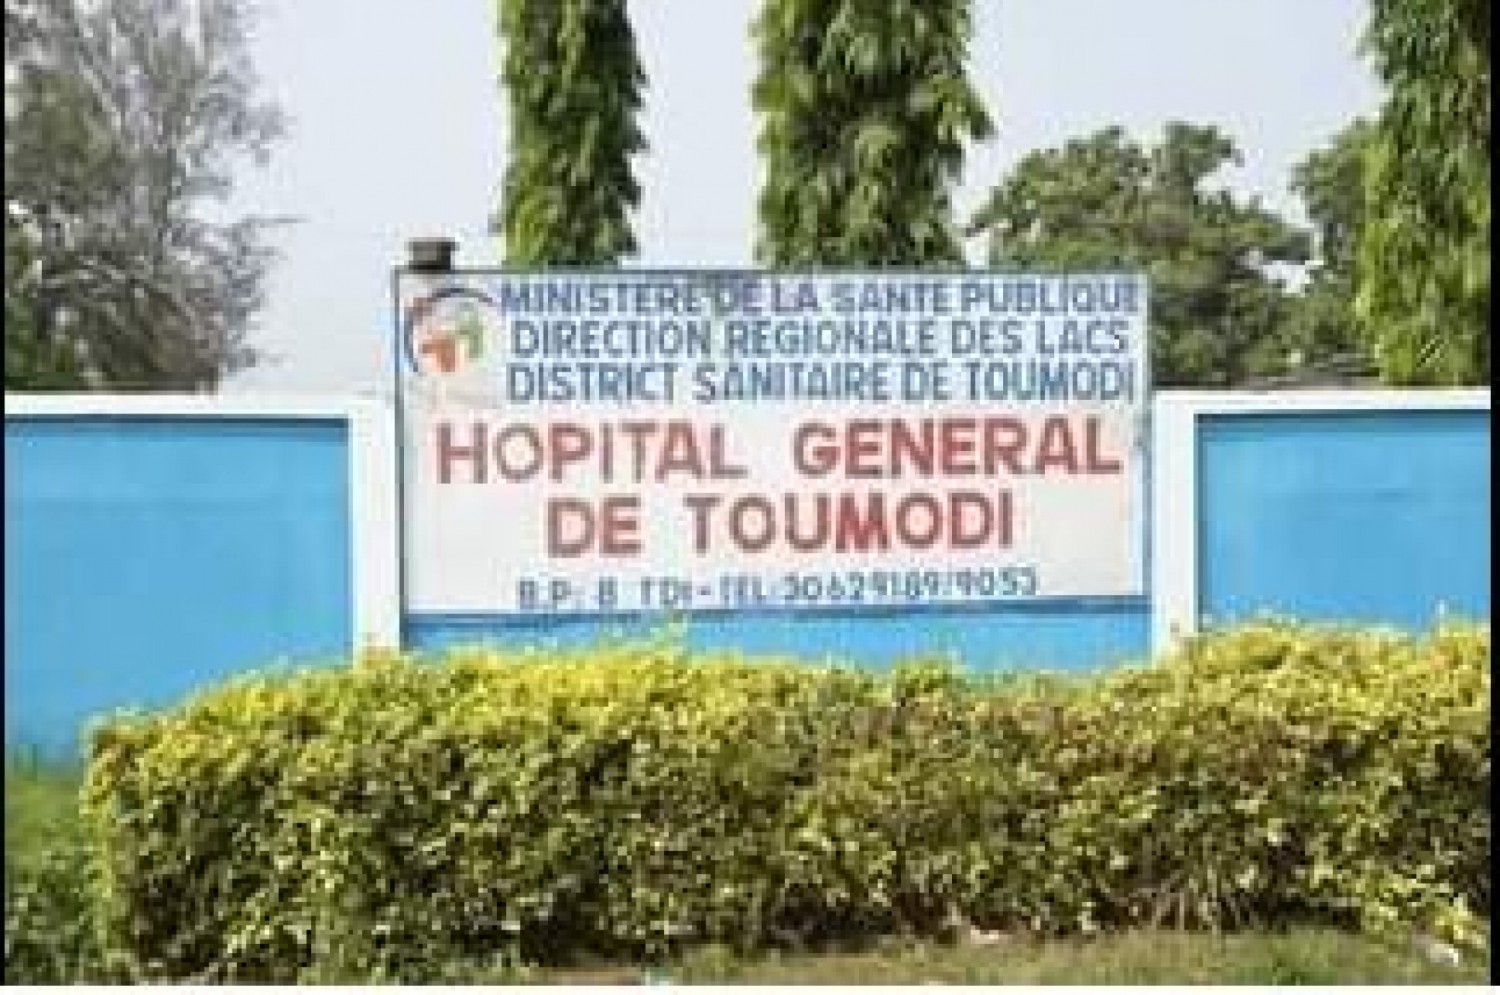 Côte d'Ivoire : Hôpital général de Toumodi, deux infirmières agressées par les accompagnateurs d'un accidenté, le procureur saisi de l'affaire